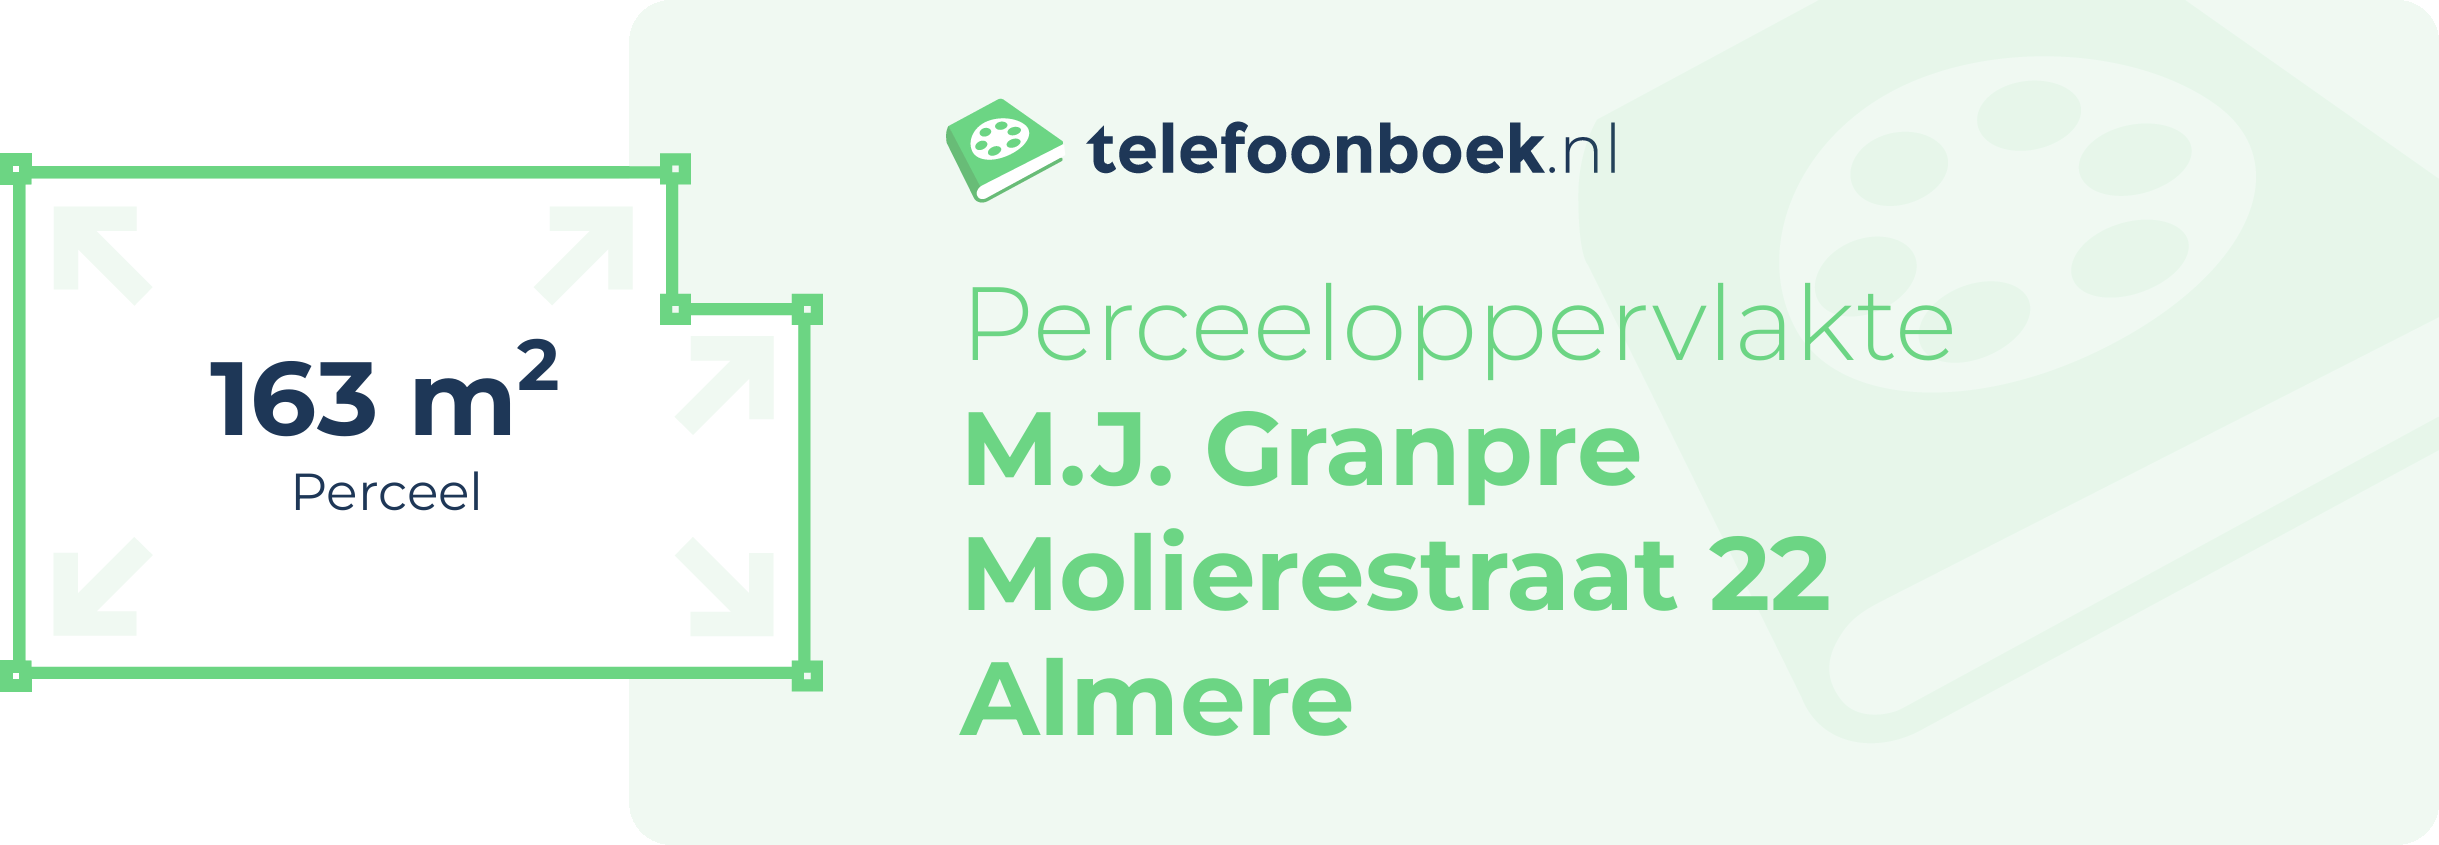 Perceeloppervlakte M.J. Granpre Molierestraat 22 Almere